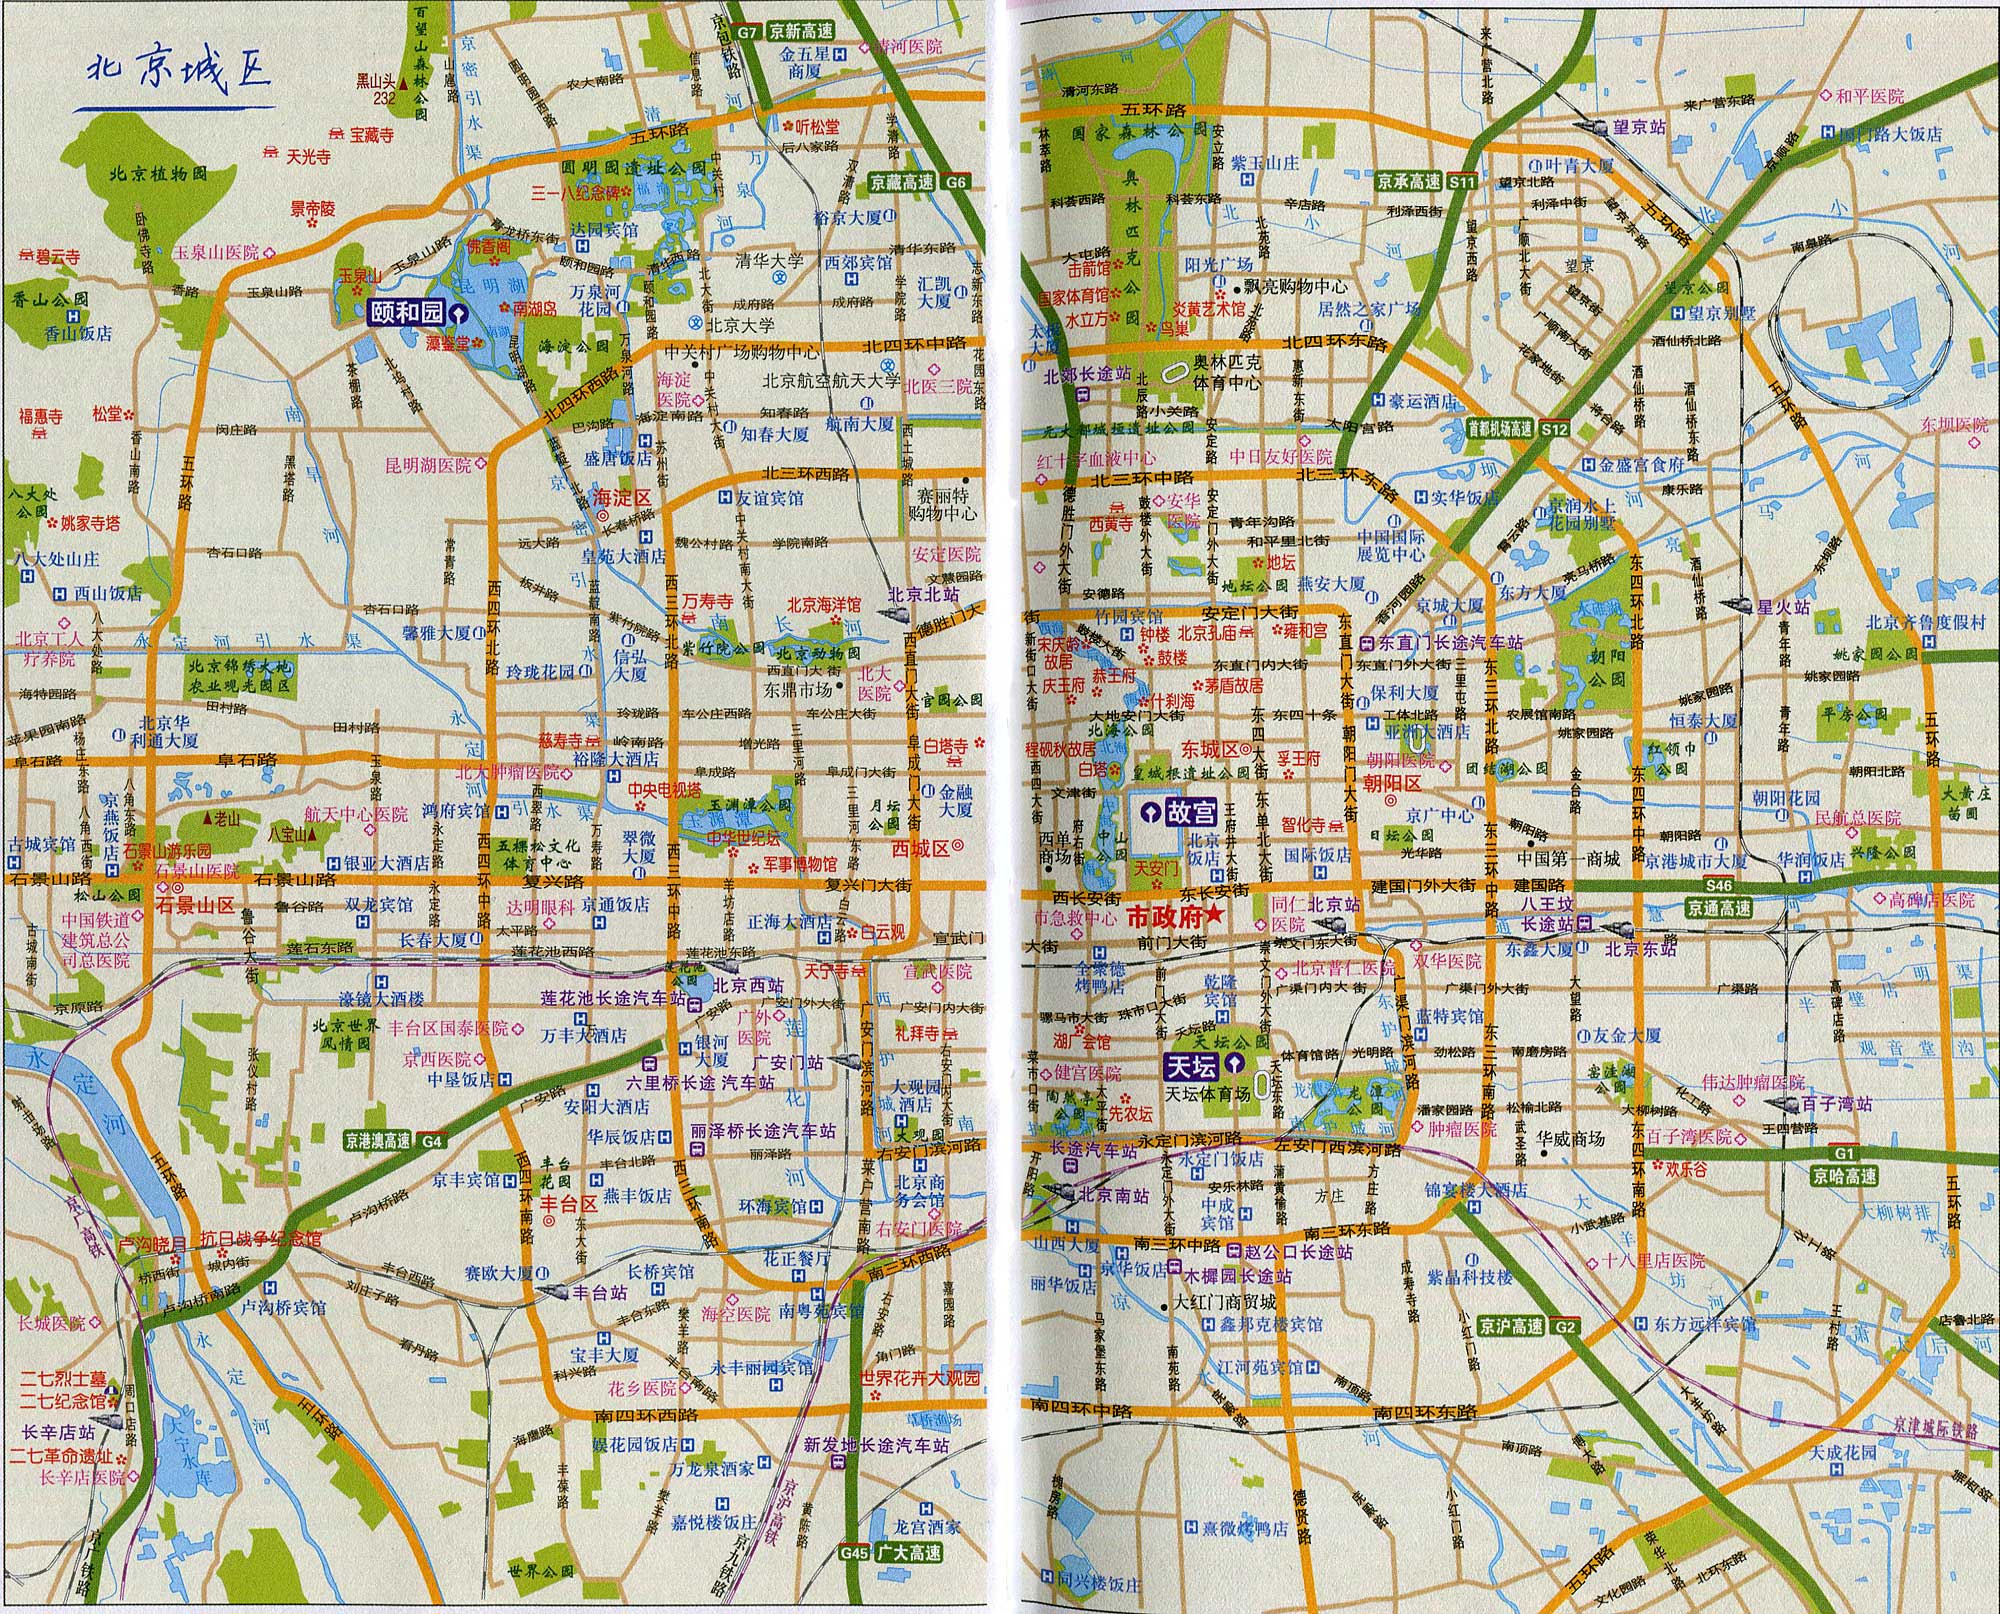 北京城区旅游图_北京旅游地图库图片